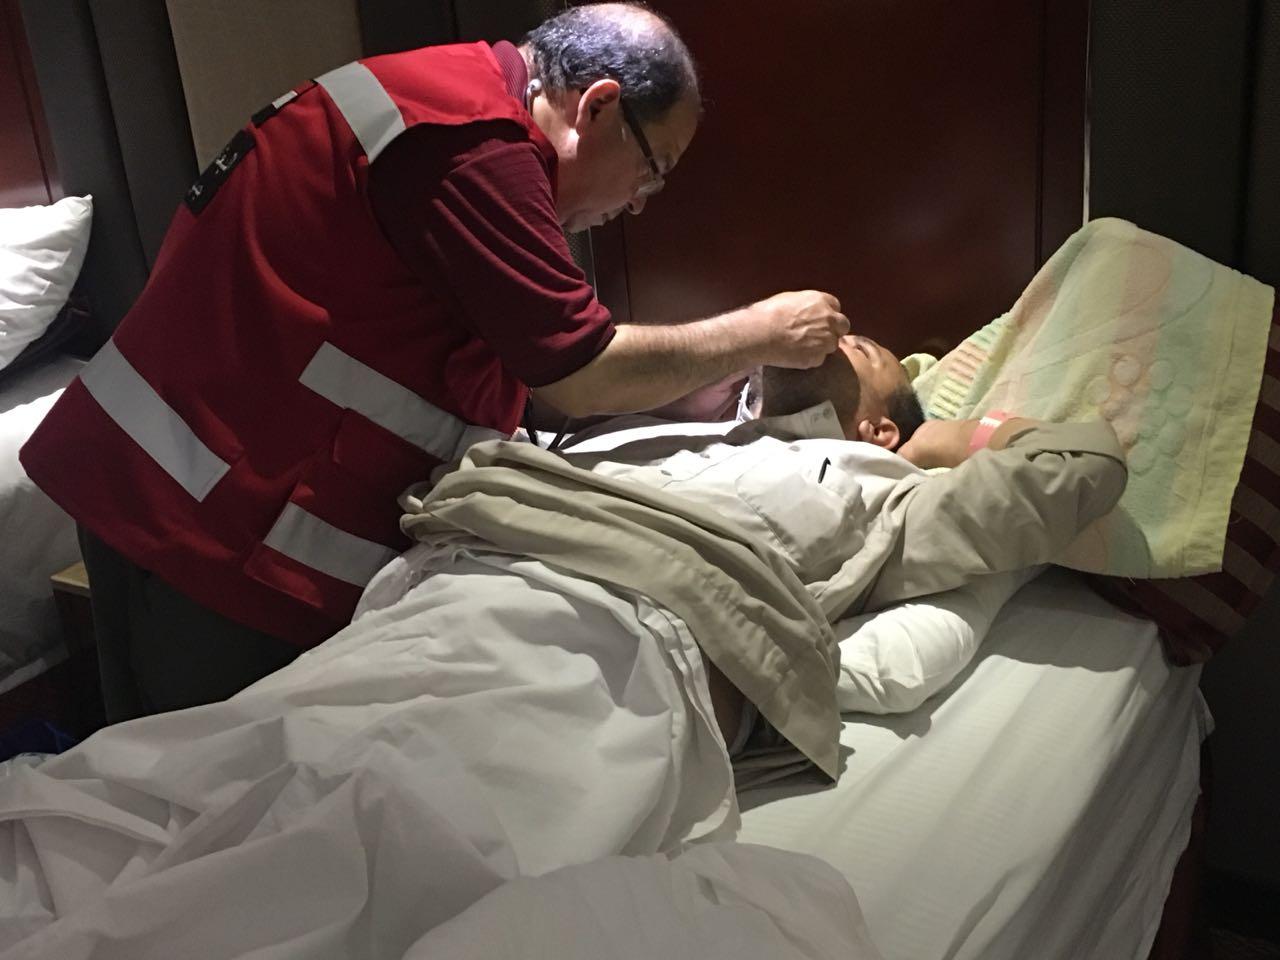   صور|| رئيس بعثة الحج الطبية والمستشارالطبي يتفقدان الحالة الصحية للحجاج المصريين المحتجزين بمستشفى الملك فيصل بمكة